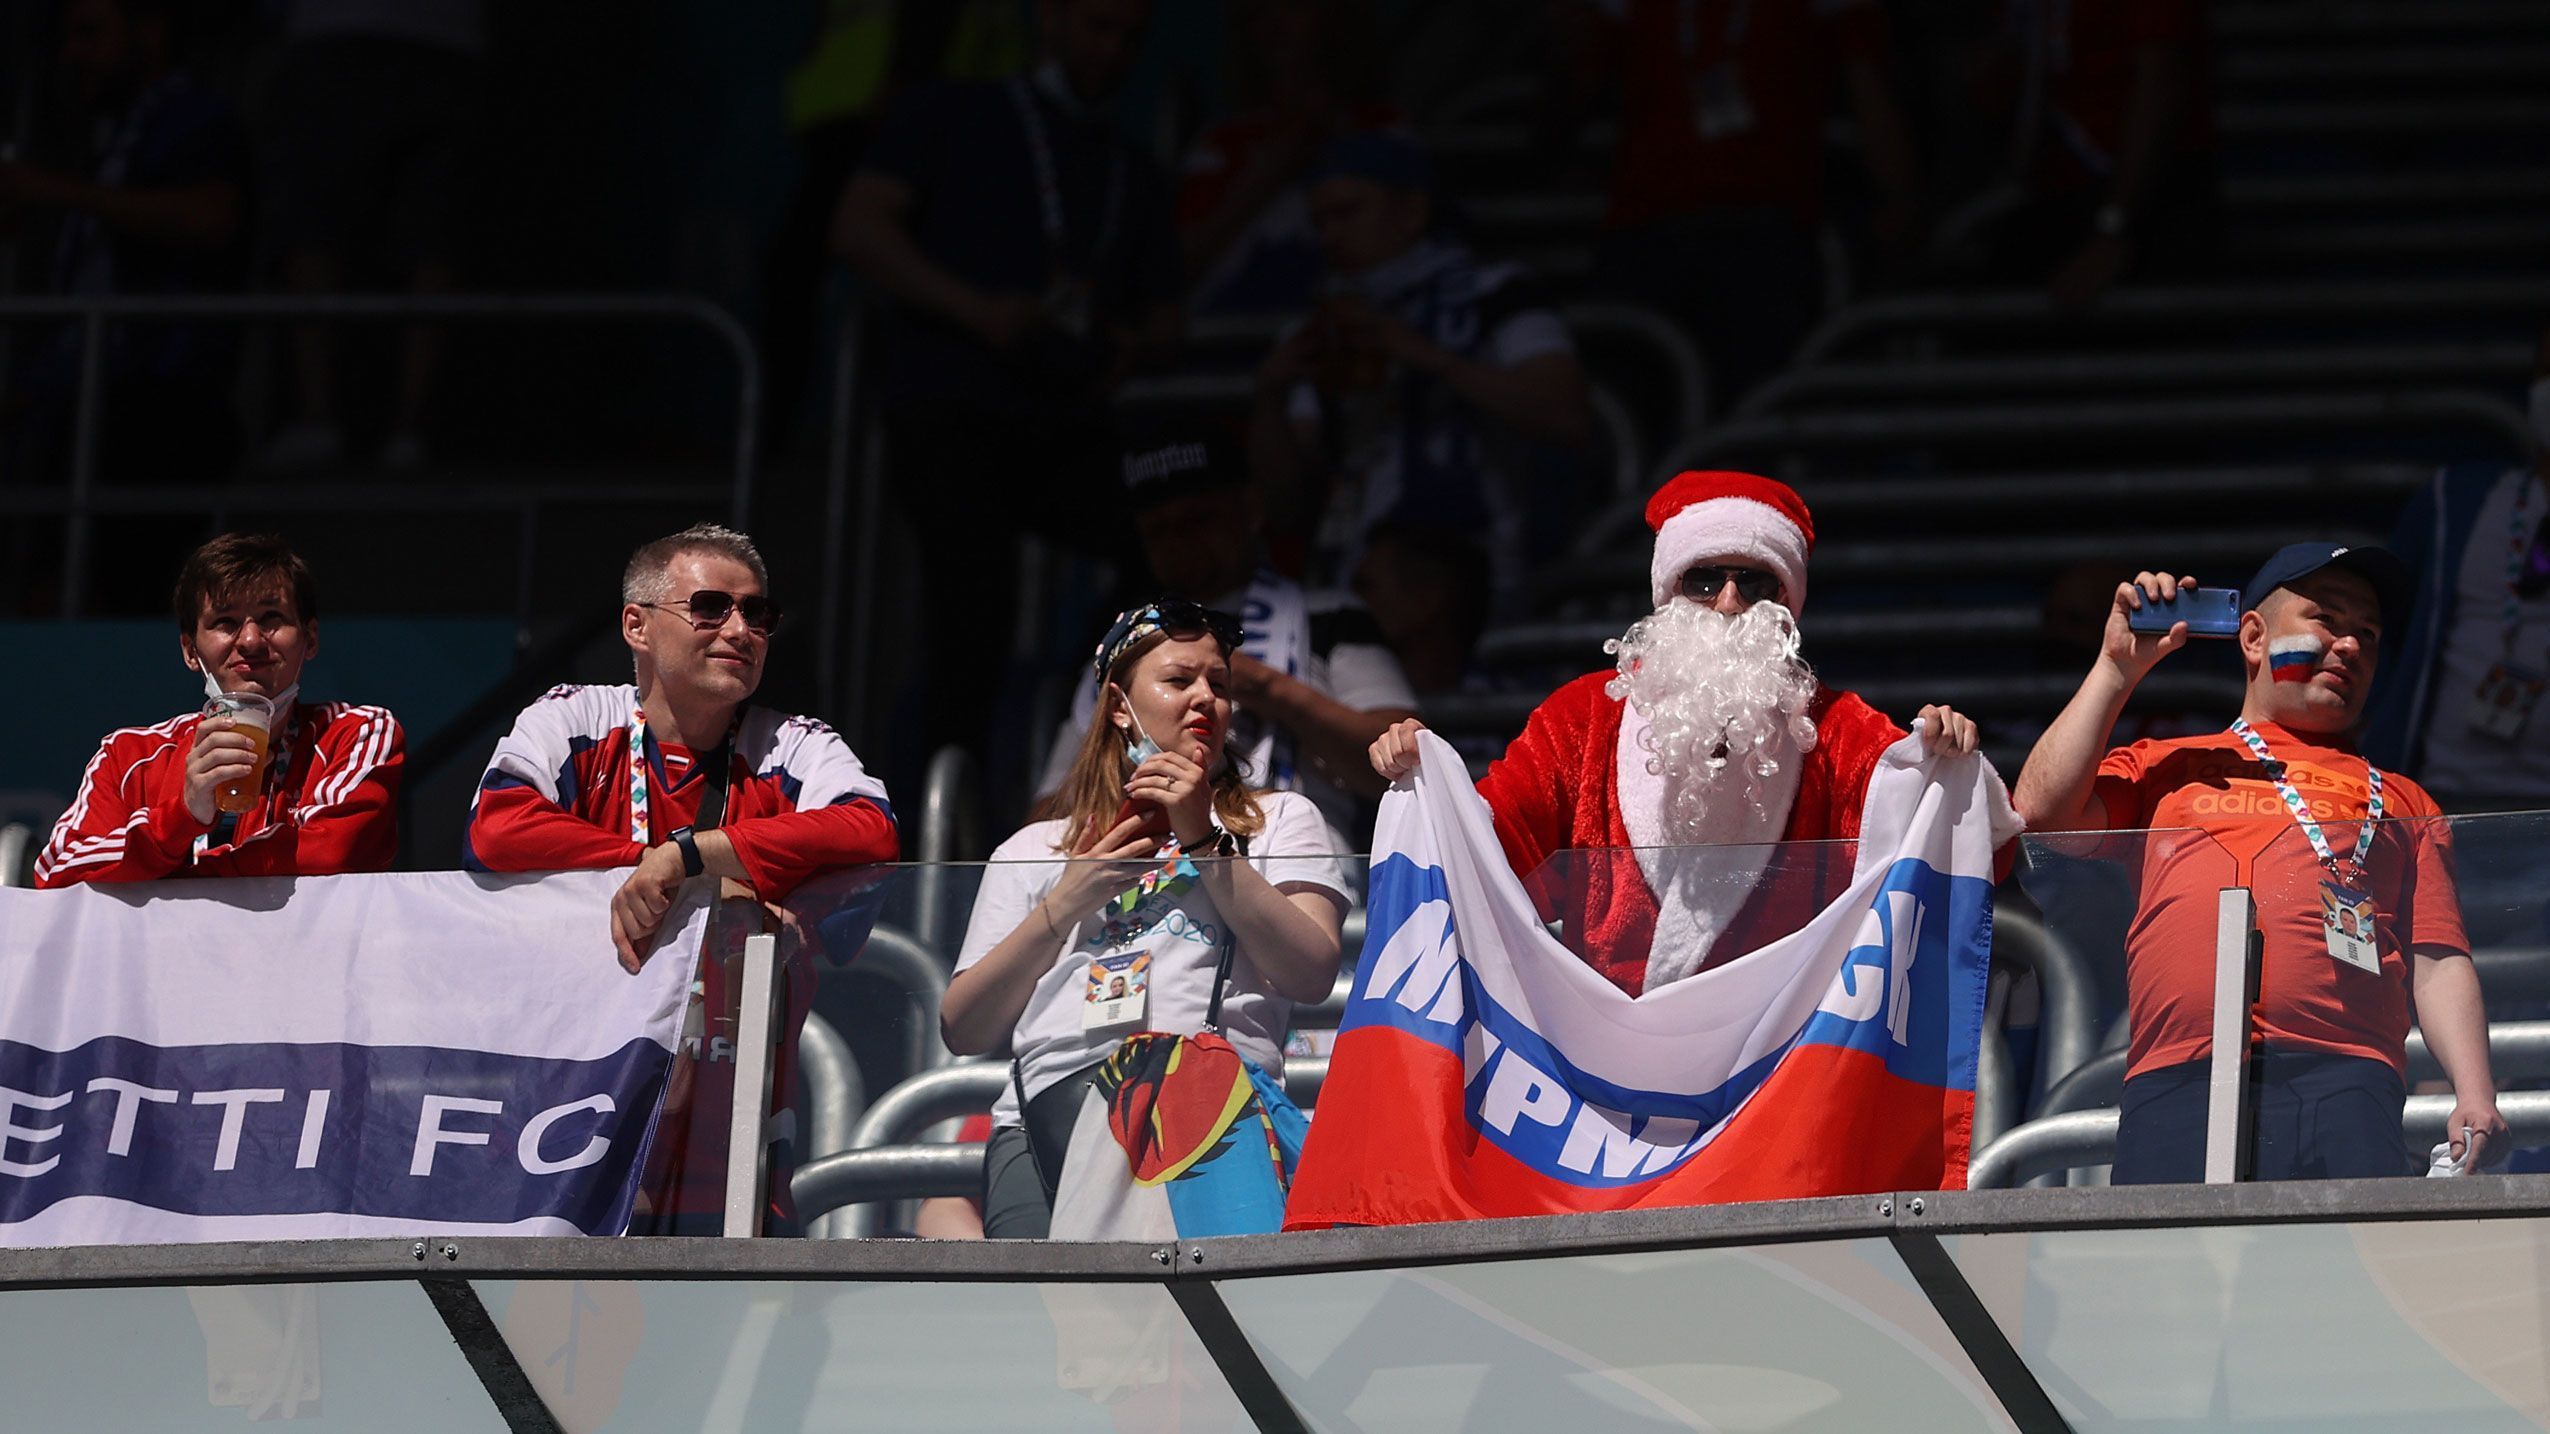 
                <strong>Der Weihnachtsmann ist ebenfalls im Haus</strong><br>
                Das freut auch den russischen Weihnachtsmann im Stadion...
              